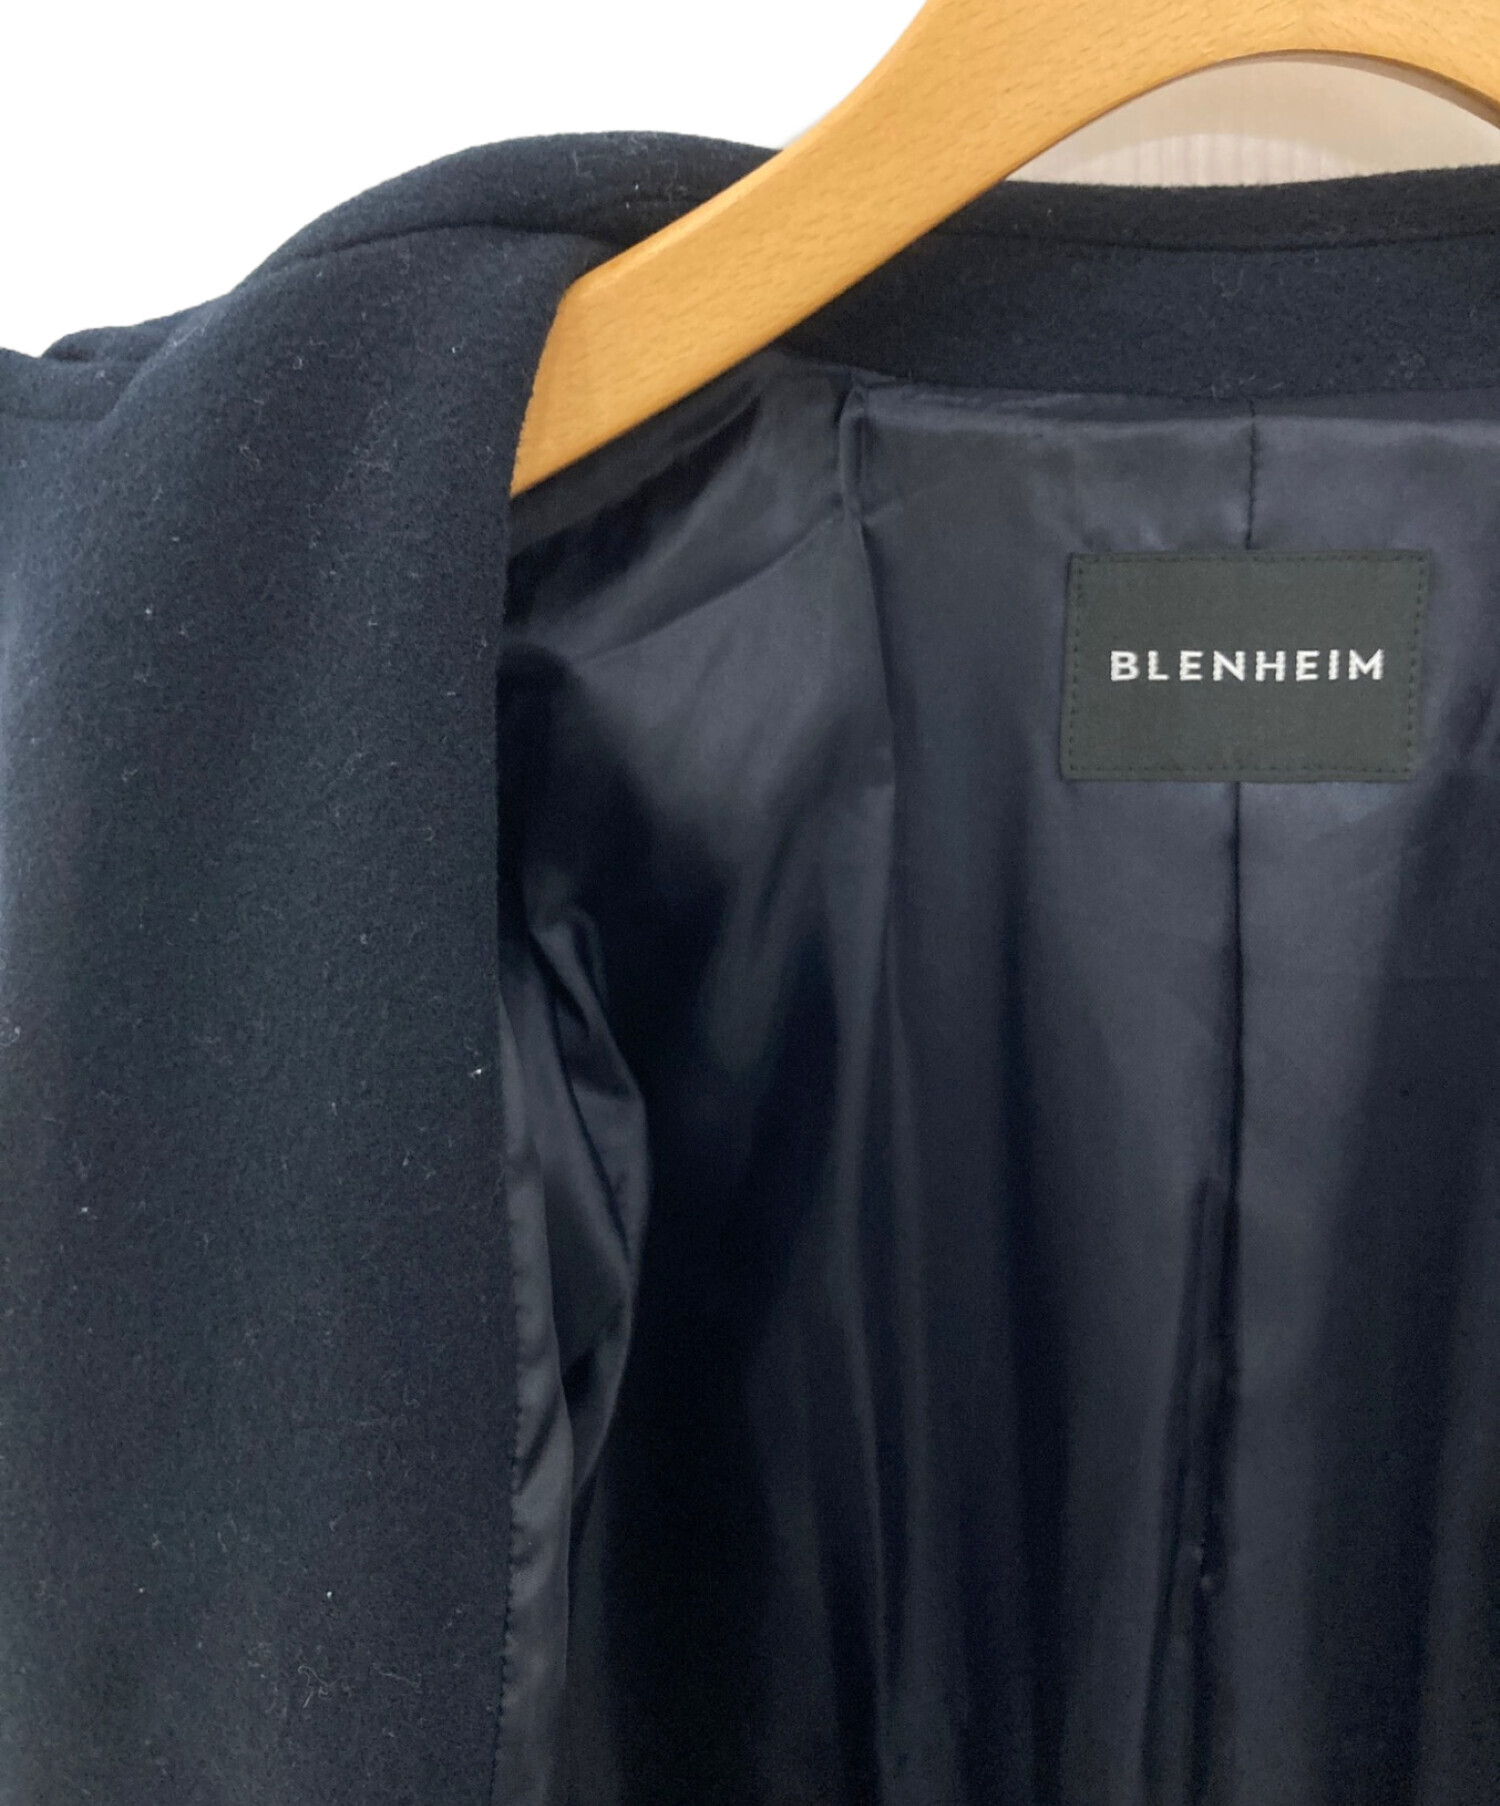 BLENHEIM (ブレンヘイム) ダブルフェイスパールボタンロングコート ネイビー サイズ:M